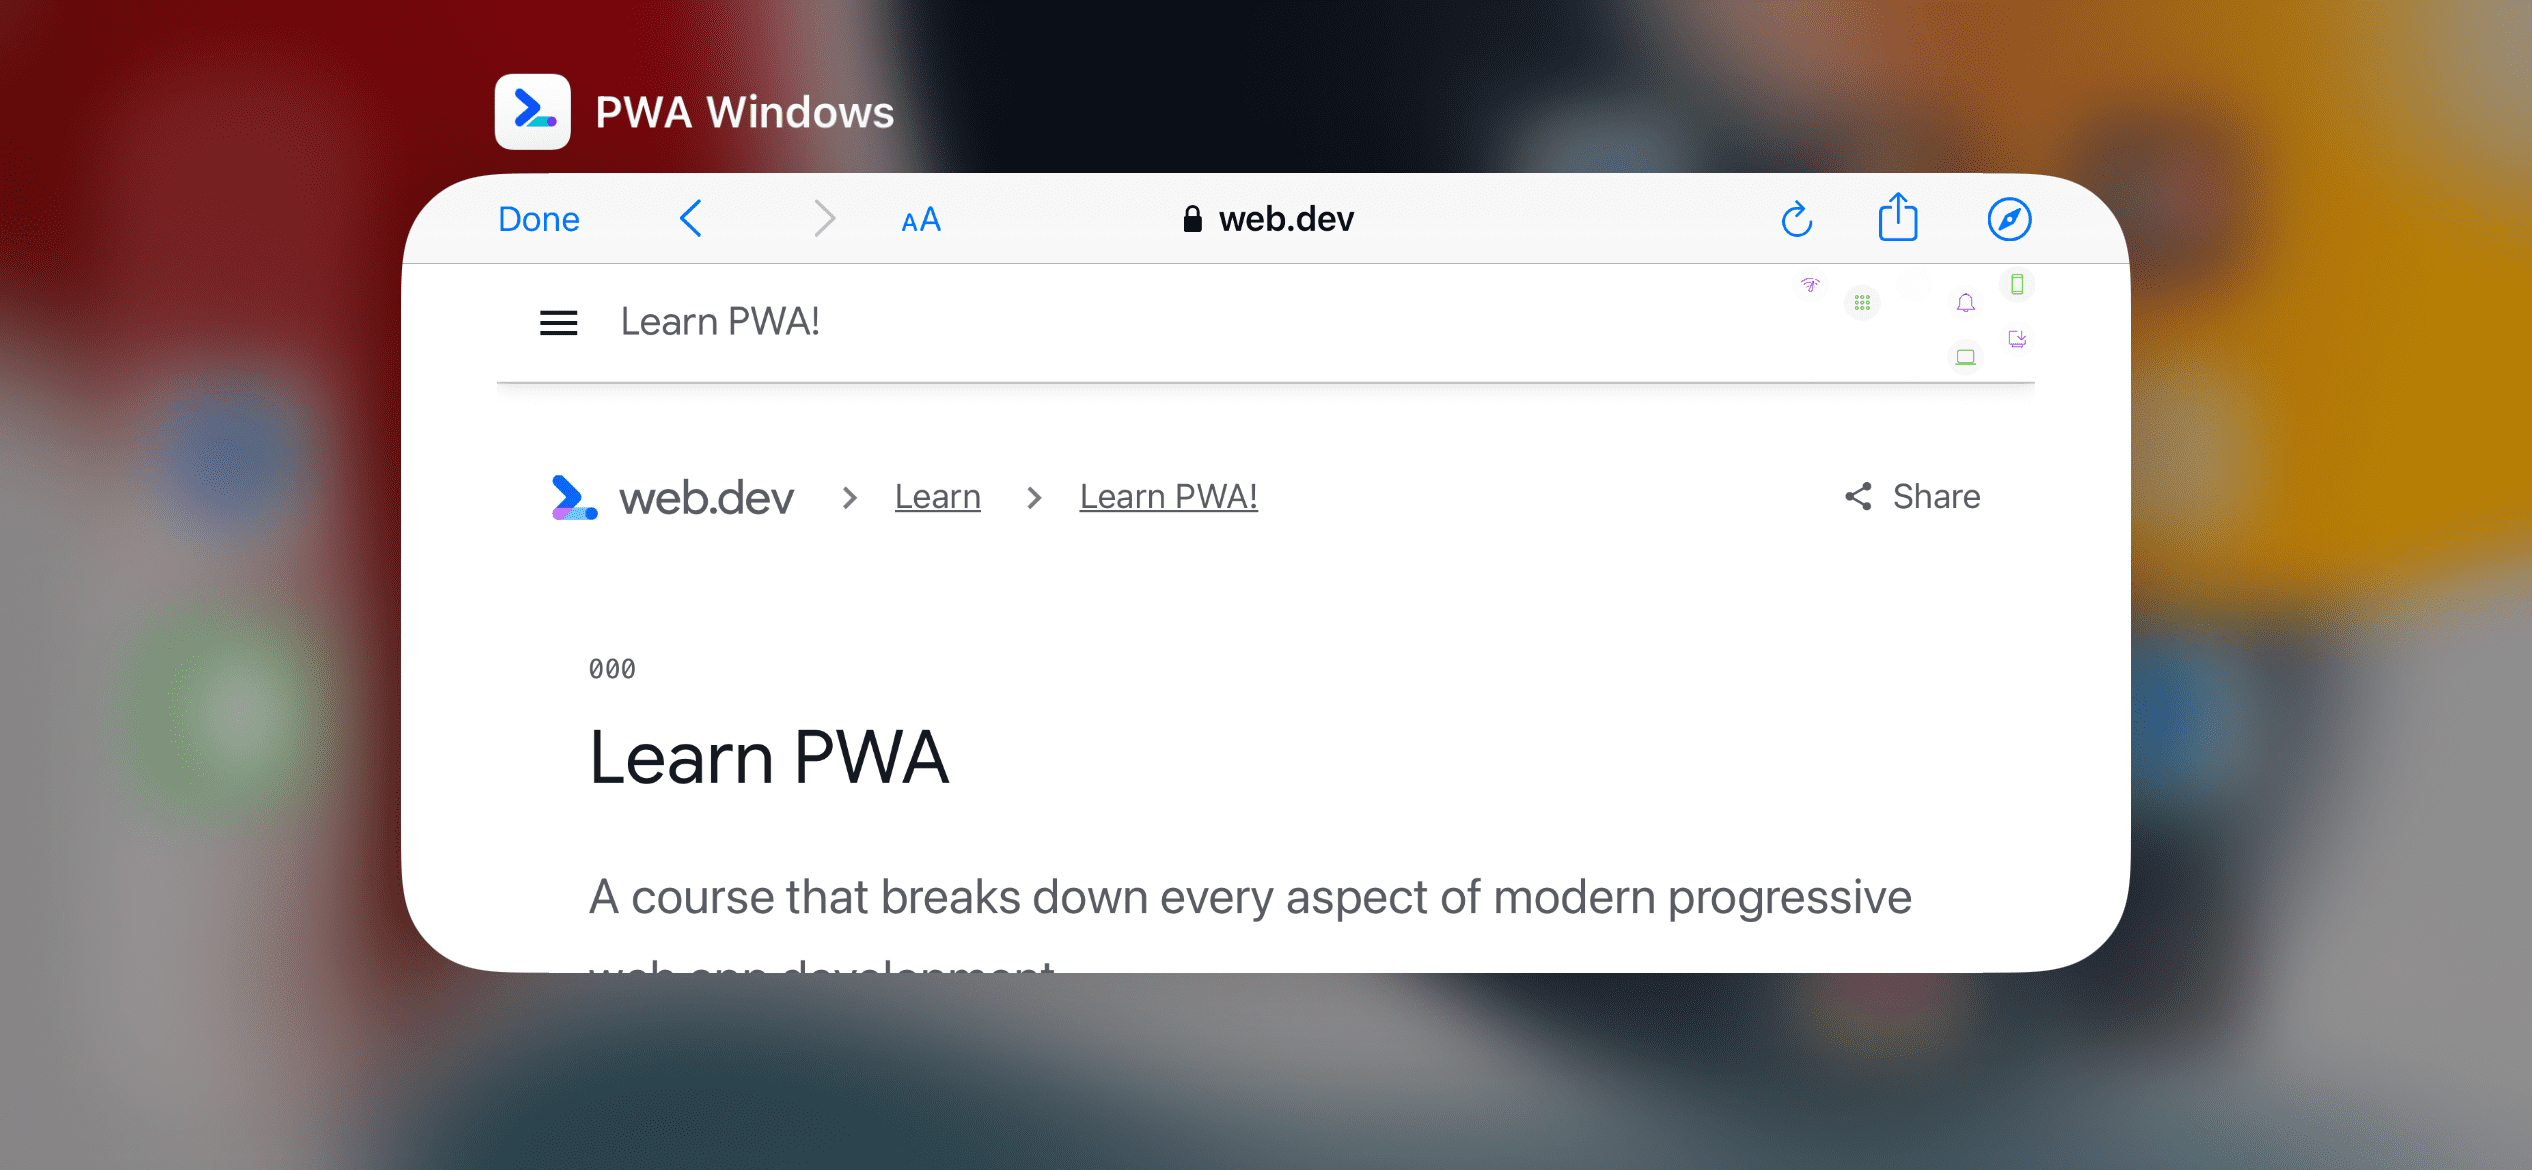 Ein In-App-Browser auf einem iPhone, der eine URL aufruft, die in einer eigenständigen PWA nicht enthalten ist.